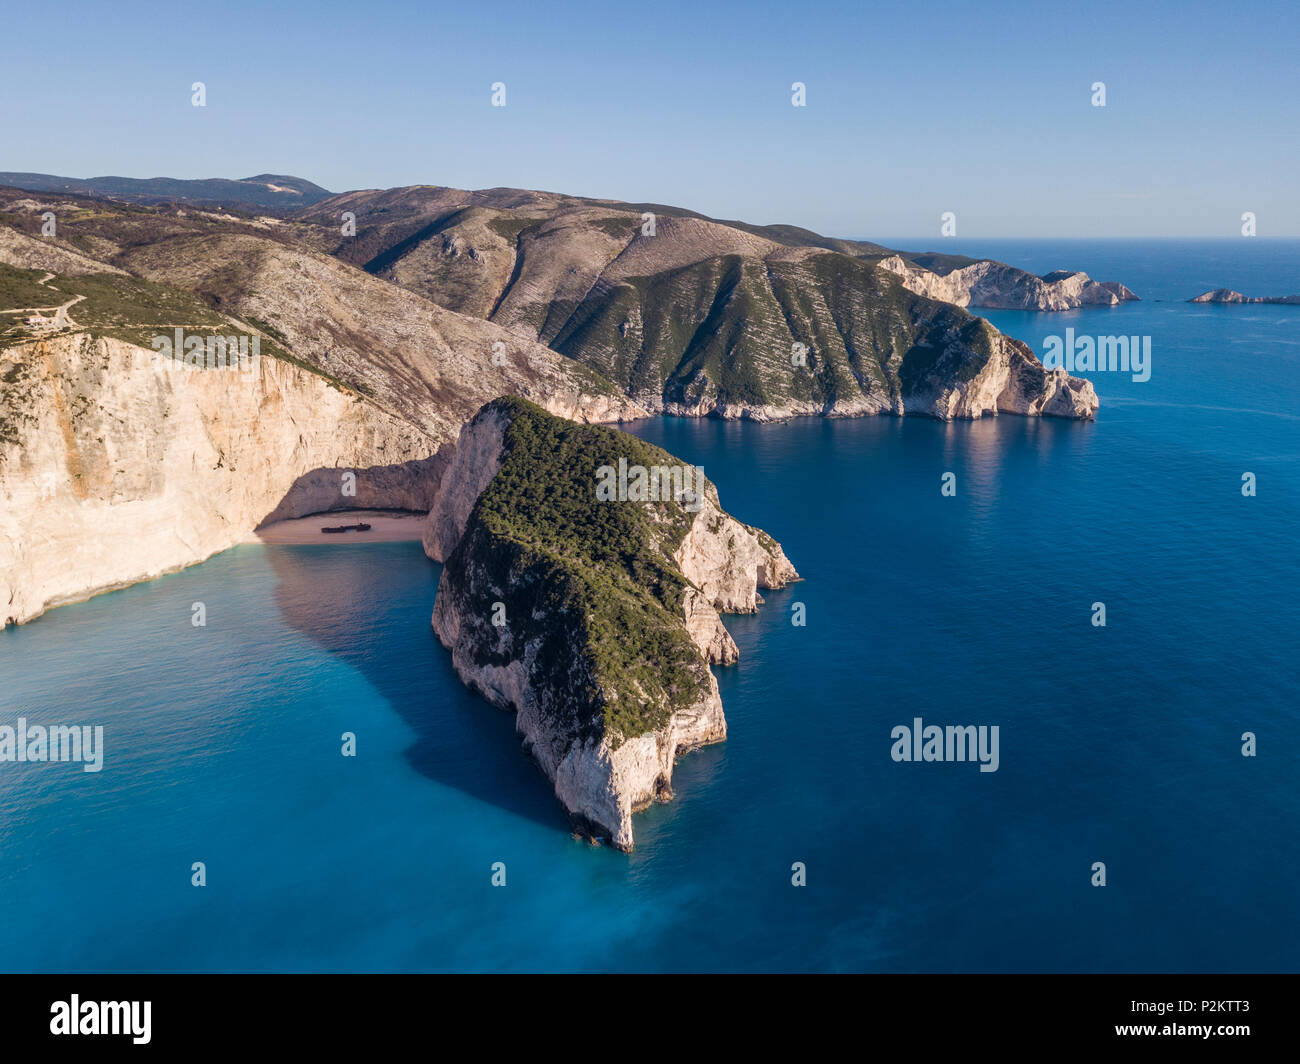 Vista aerea di Navagio o Shipwreck sulla costa di Zante, Isole Ionie della Grecia Foto Stock